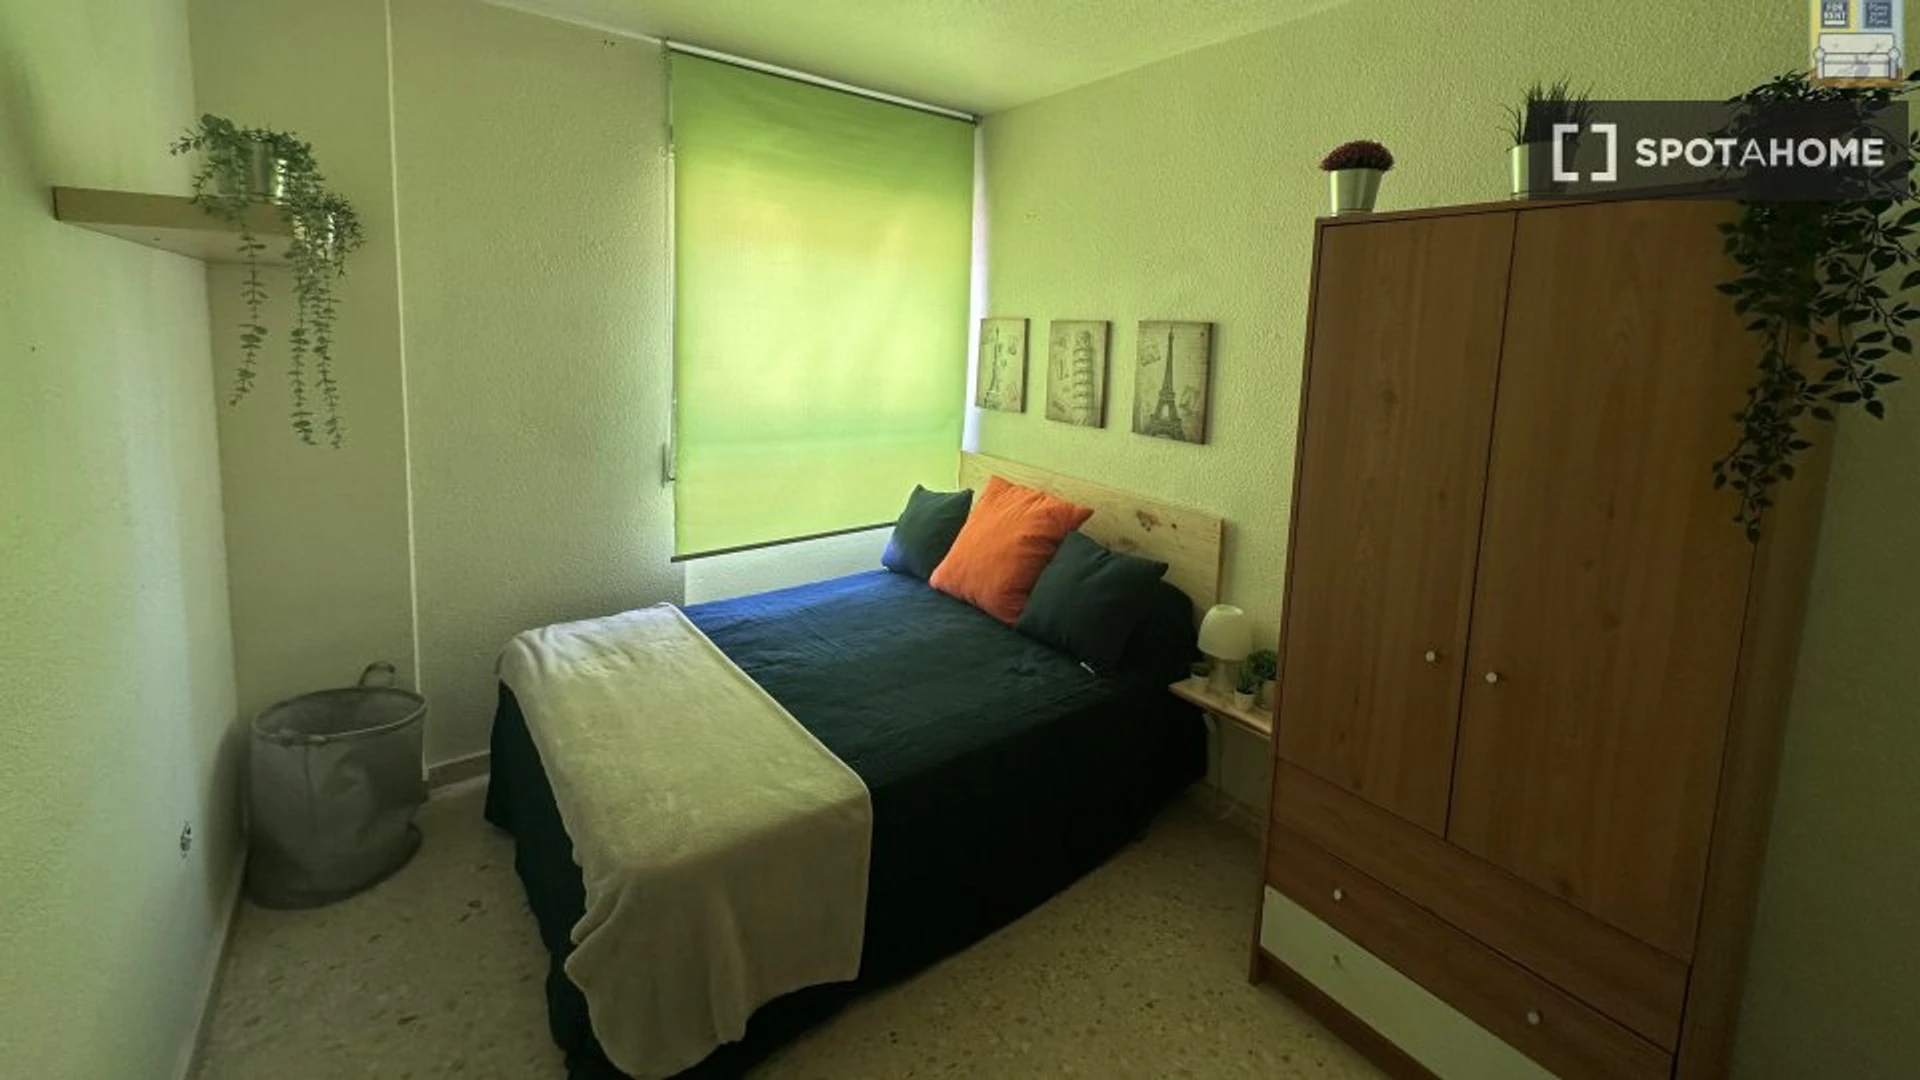 Monatliche Vermietung von Zimmern in Cartagena